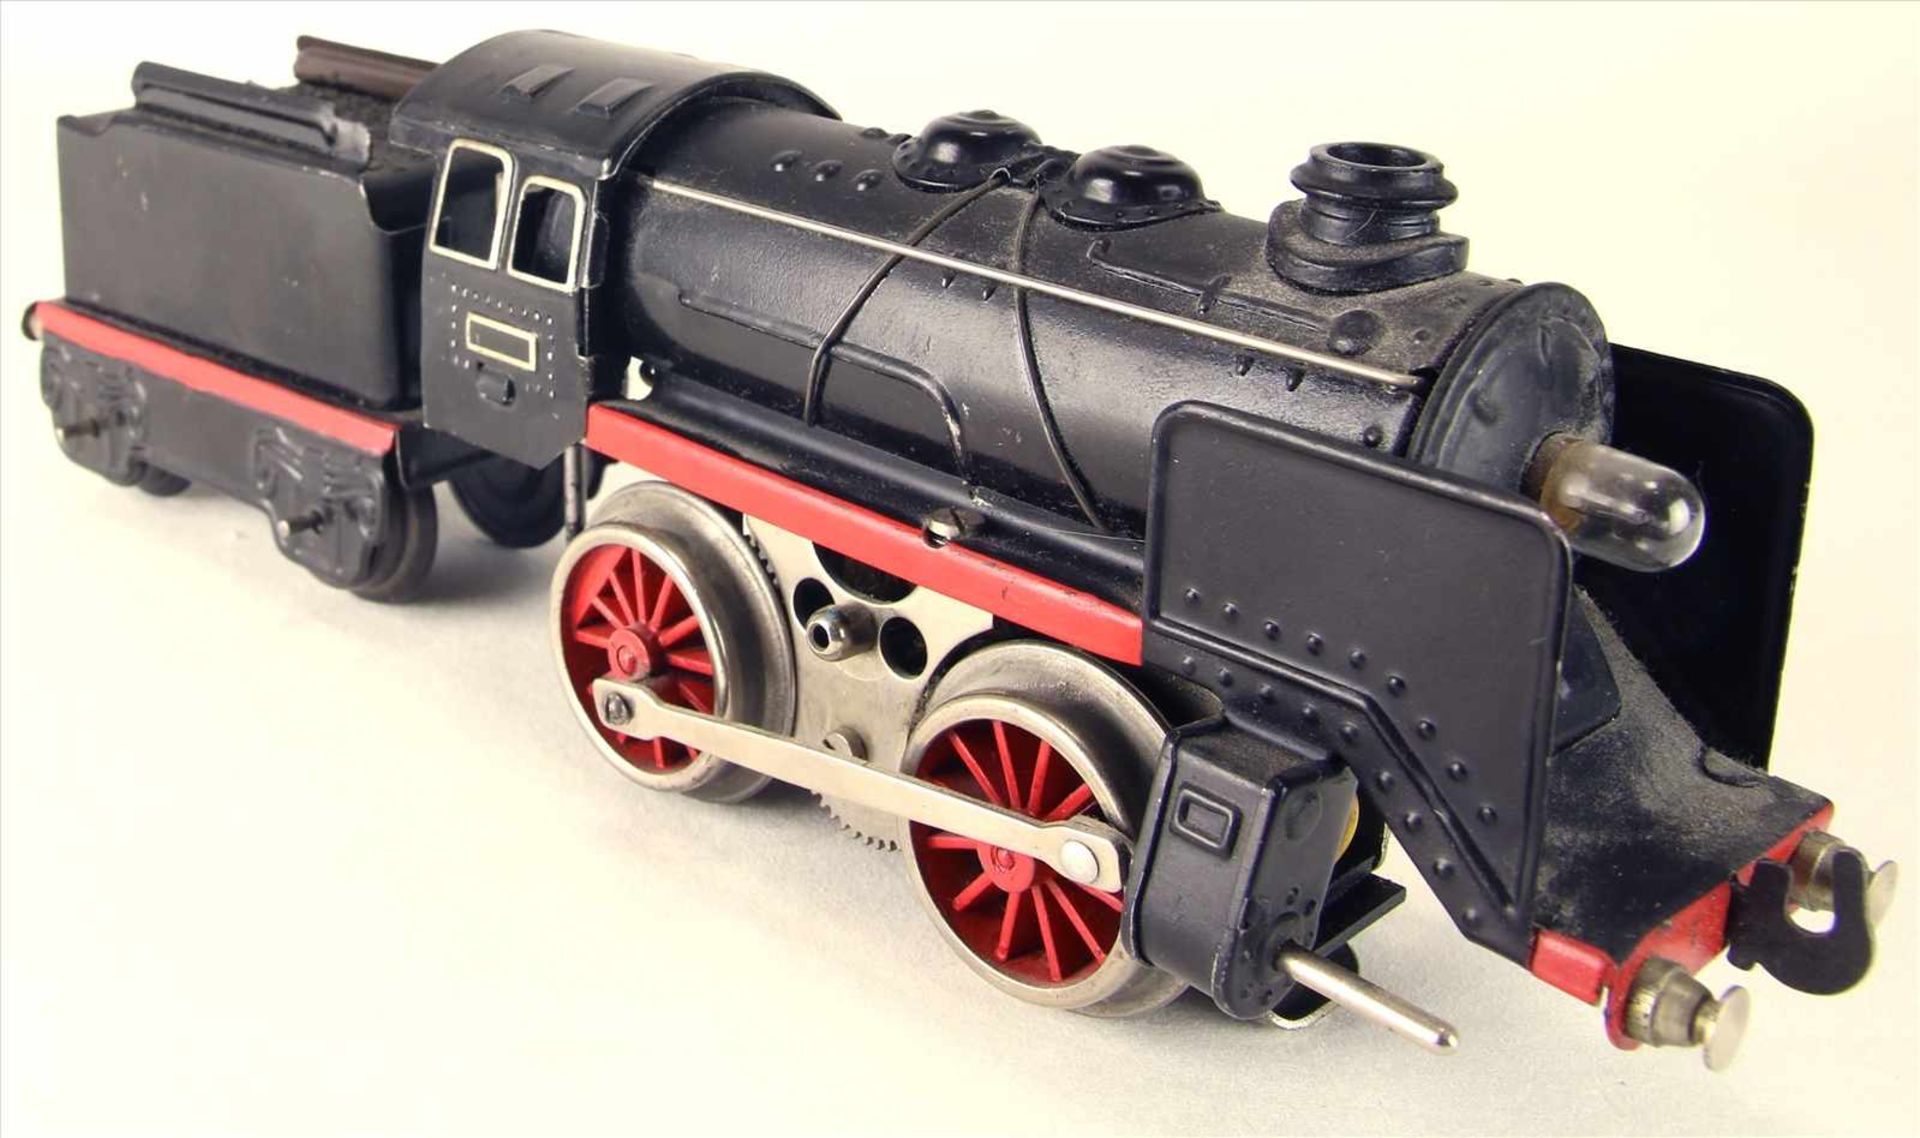 Dampflokomotive Spur 0Karl Bub späte 1940-er Jahre. Dampflok mit Tender. Elektroantrieb. - Image 2 of 5